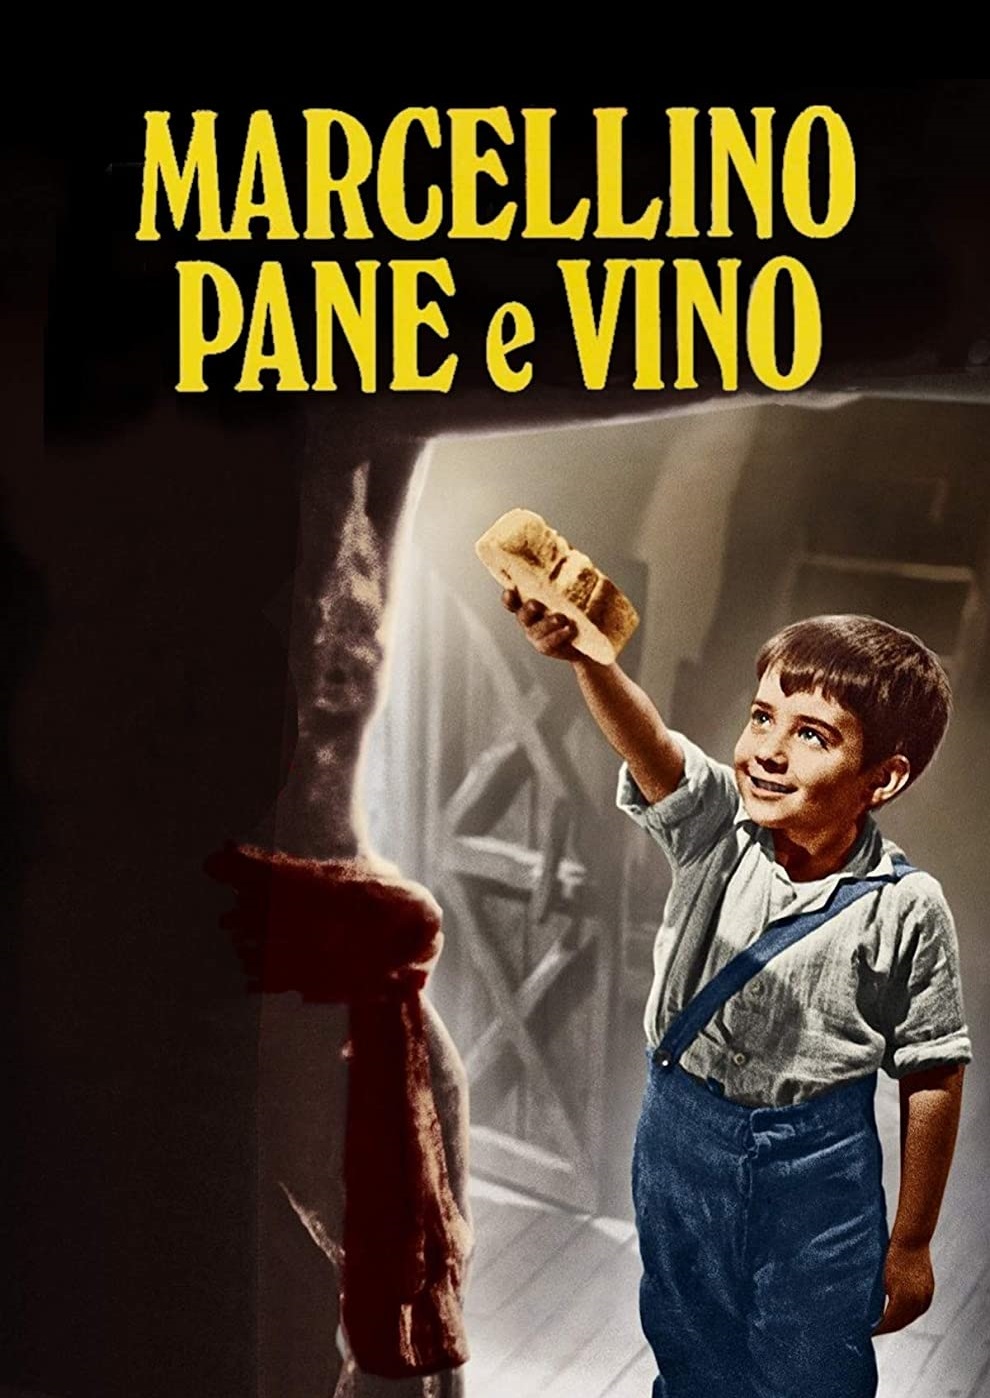 Marcellino pane e vino [B/N] [HD] (1955)